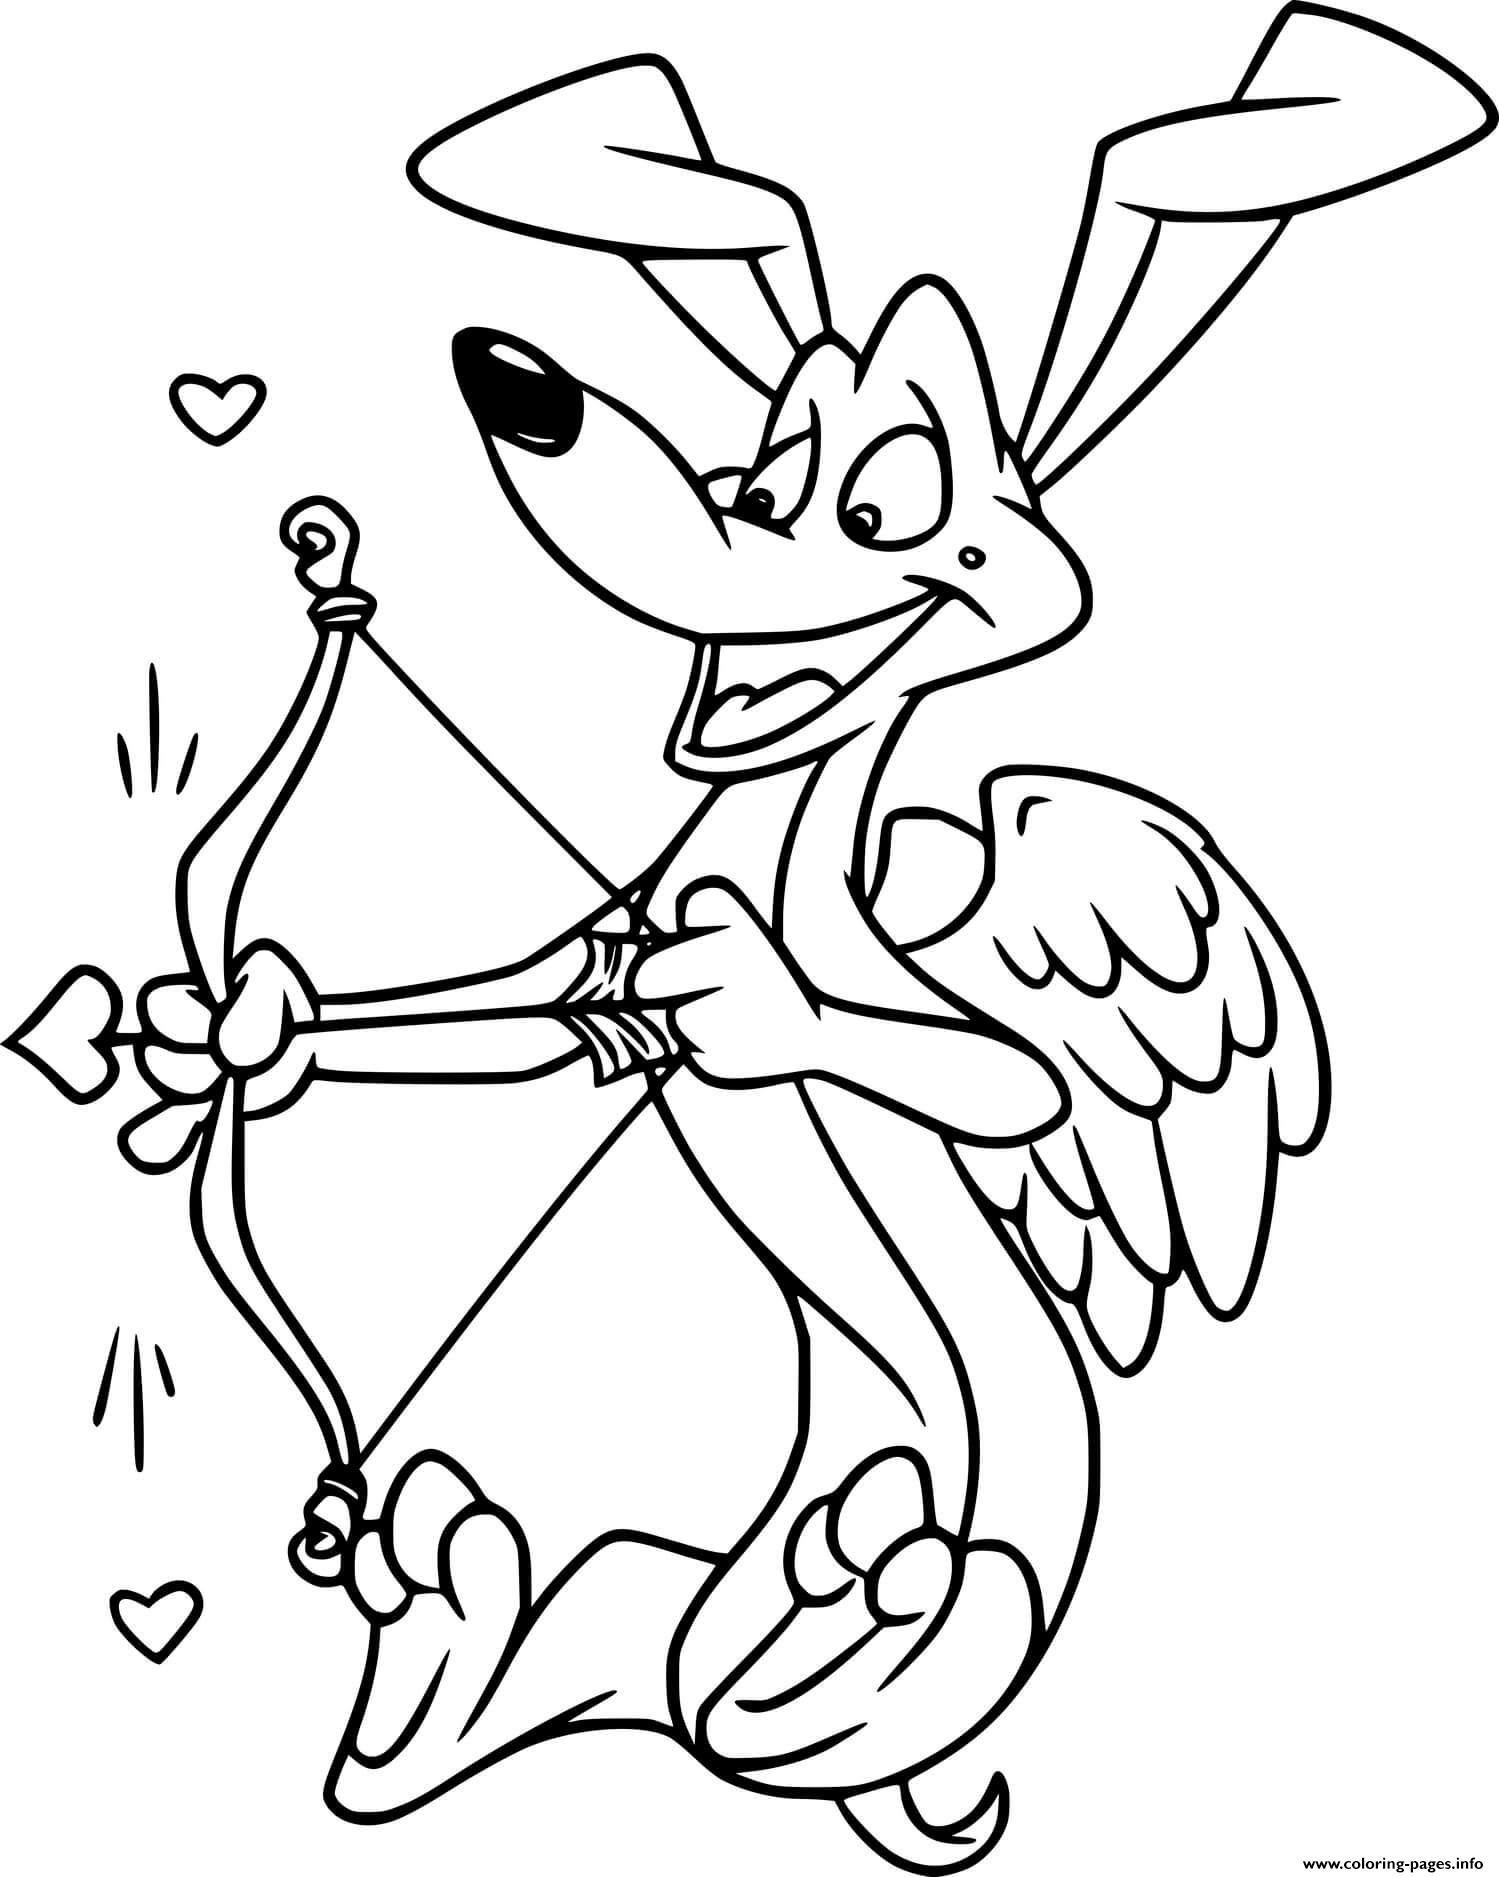 Cupid Fox coloring